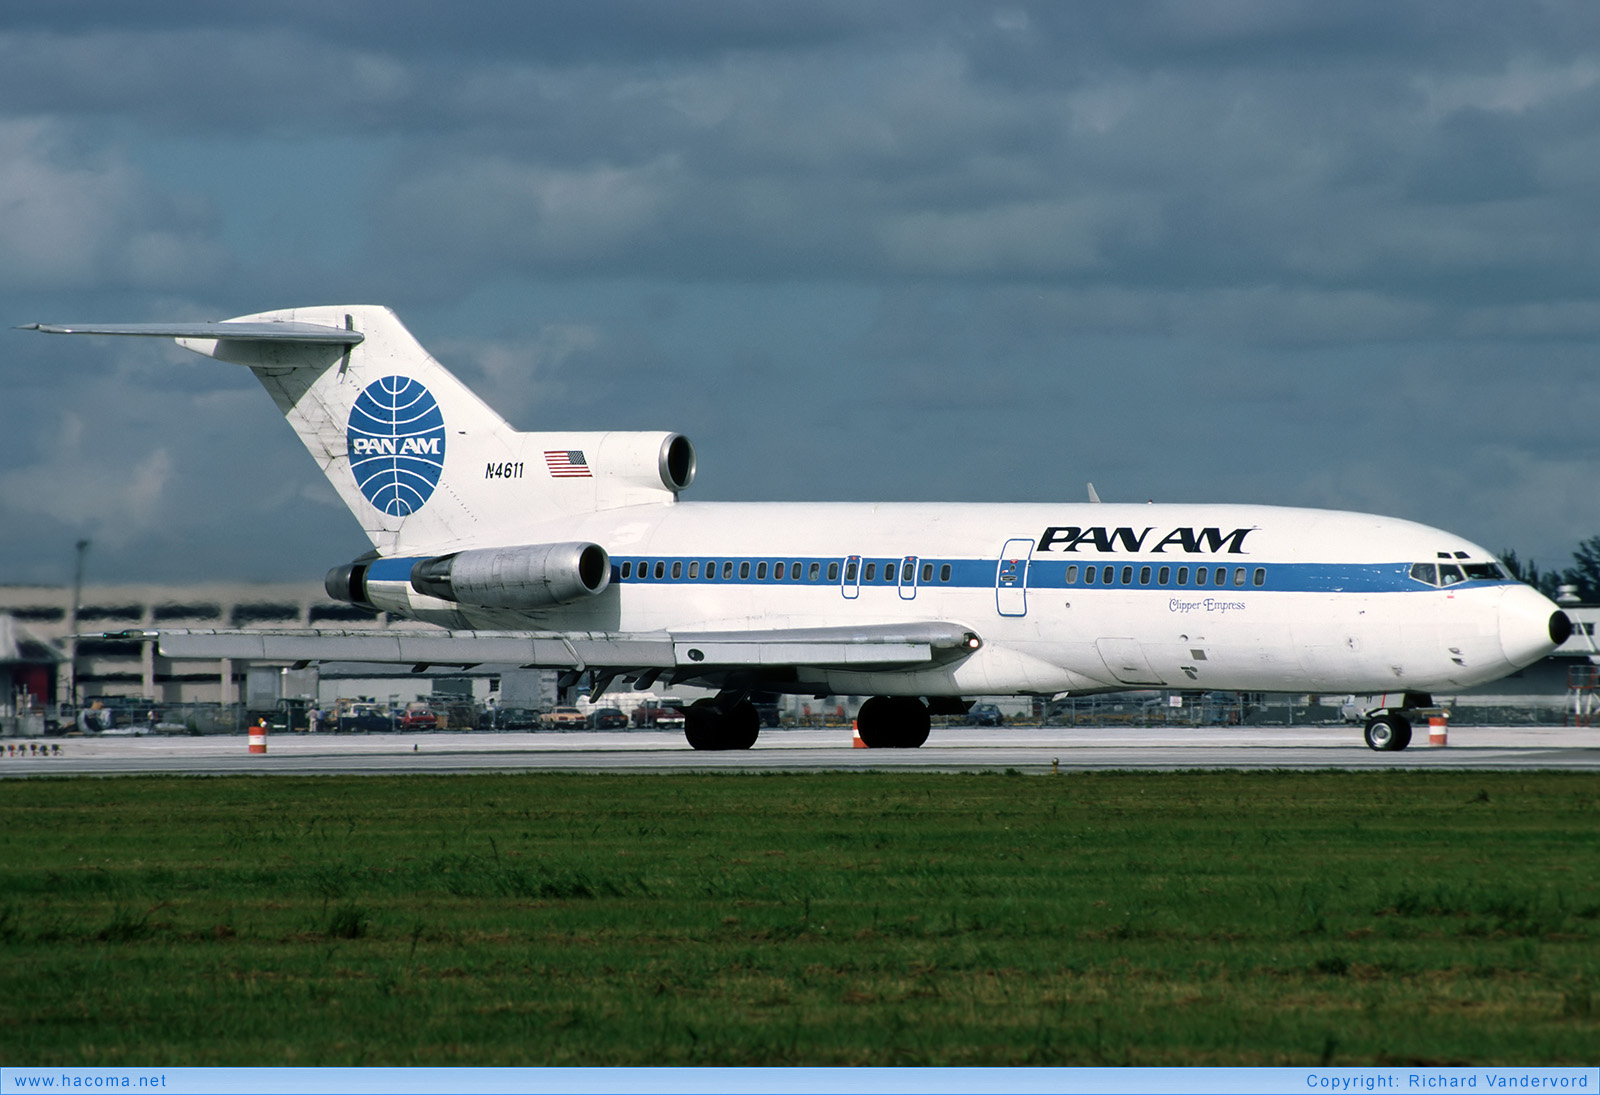 Foto von N4611 - Pan Am Clipper Empress - Miami International Airport - 21.11.1986